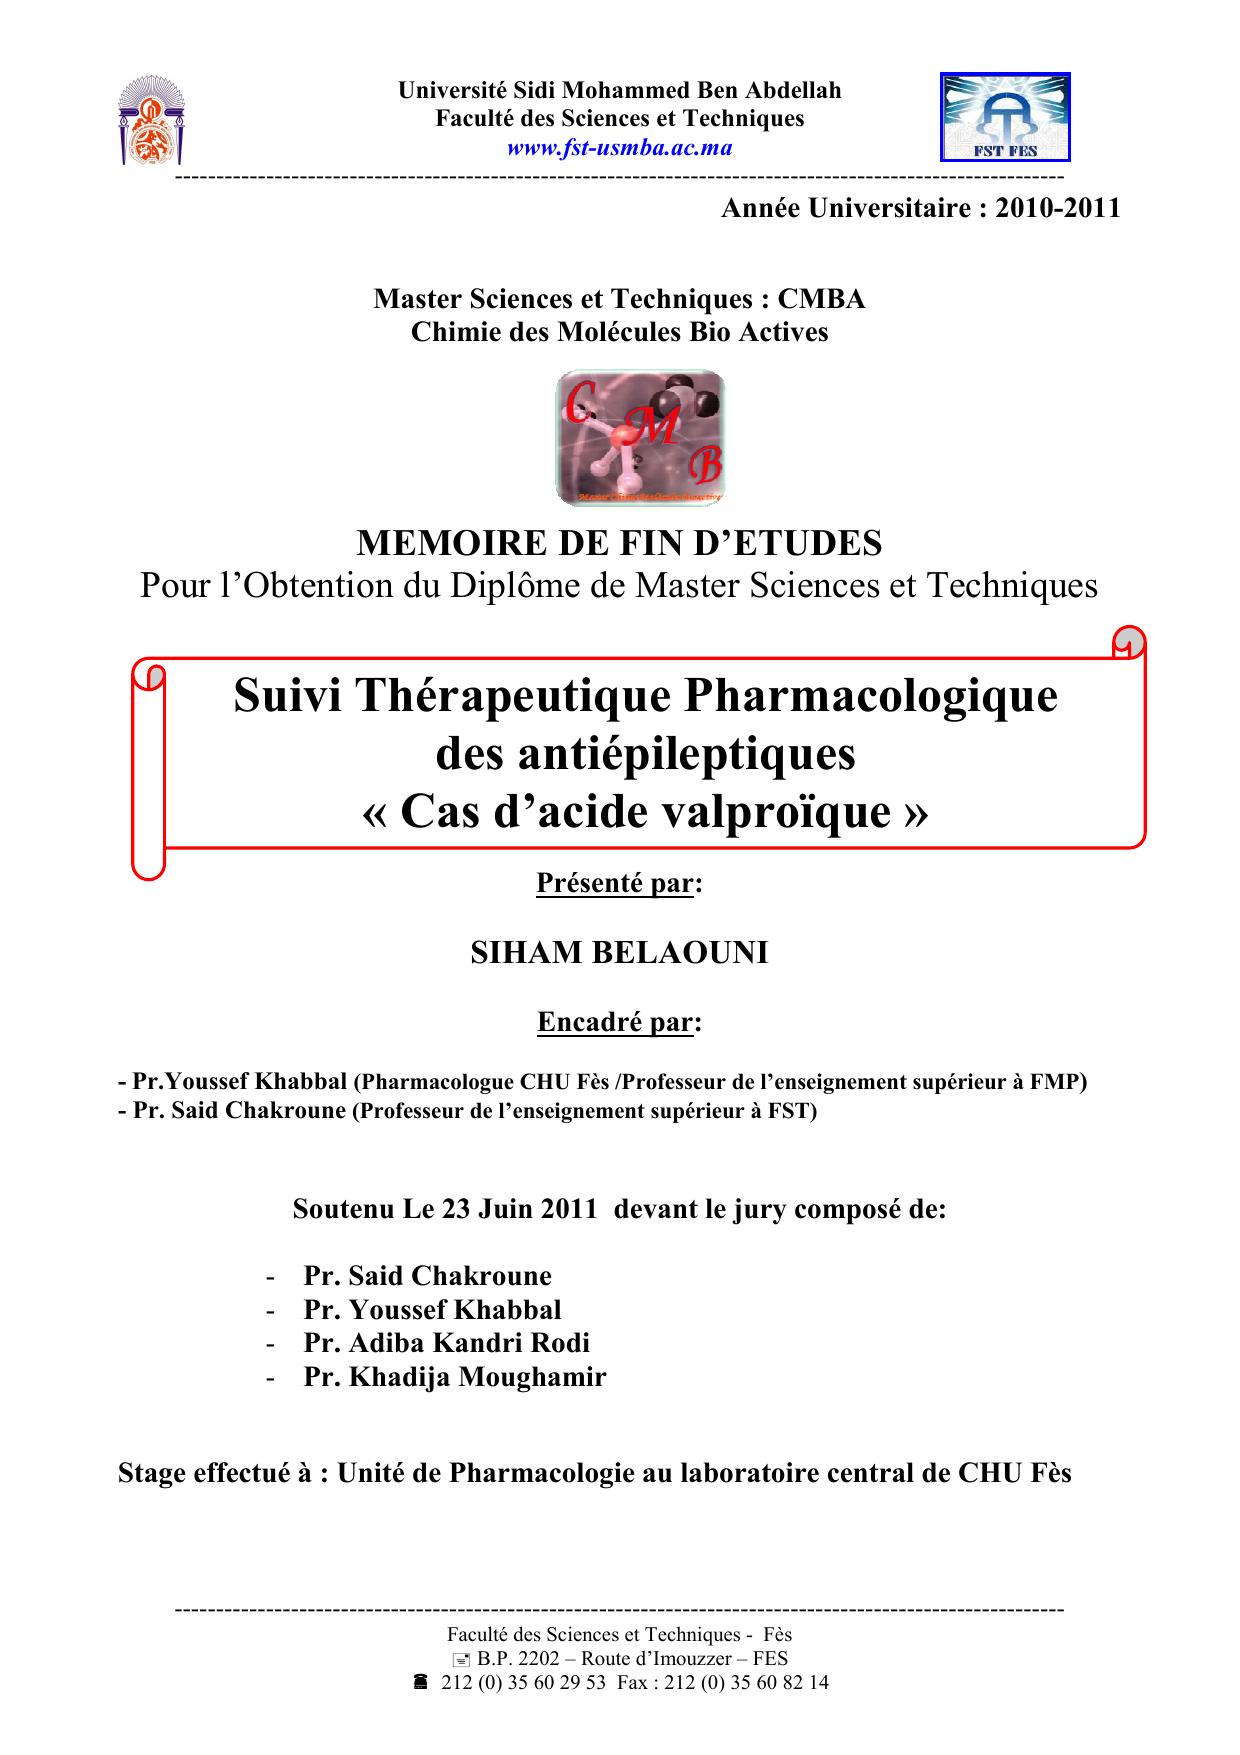 Suivi Thérapeutique Pharmacologique des antiépileptiques « Cas d’acide valproïque »